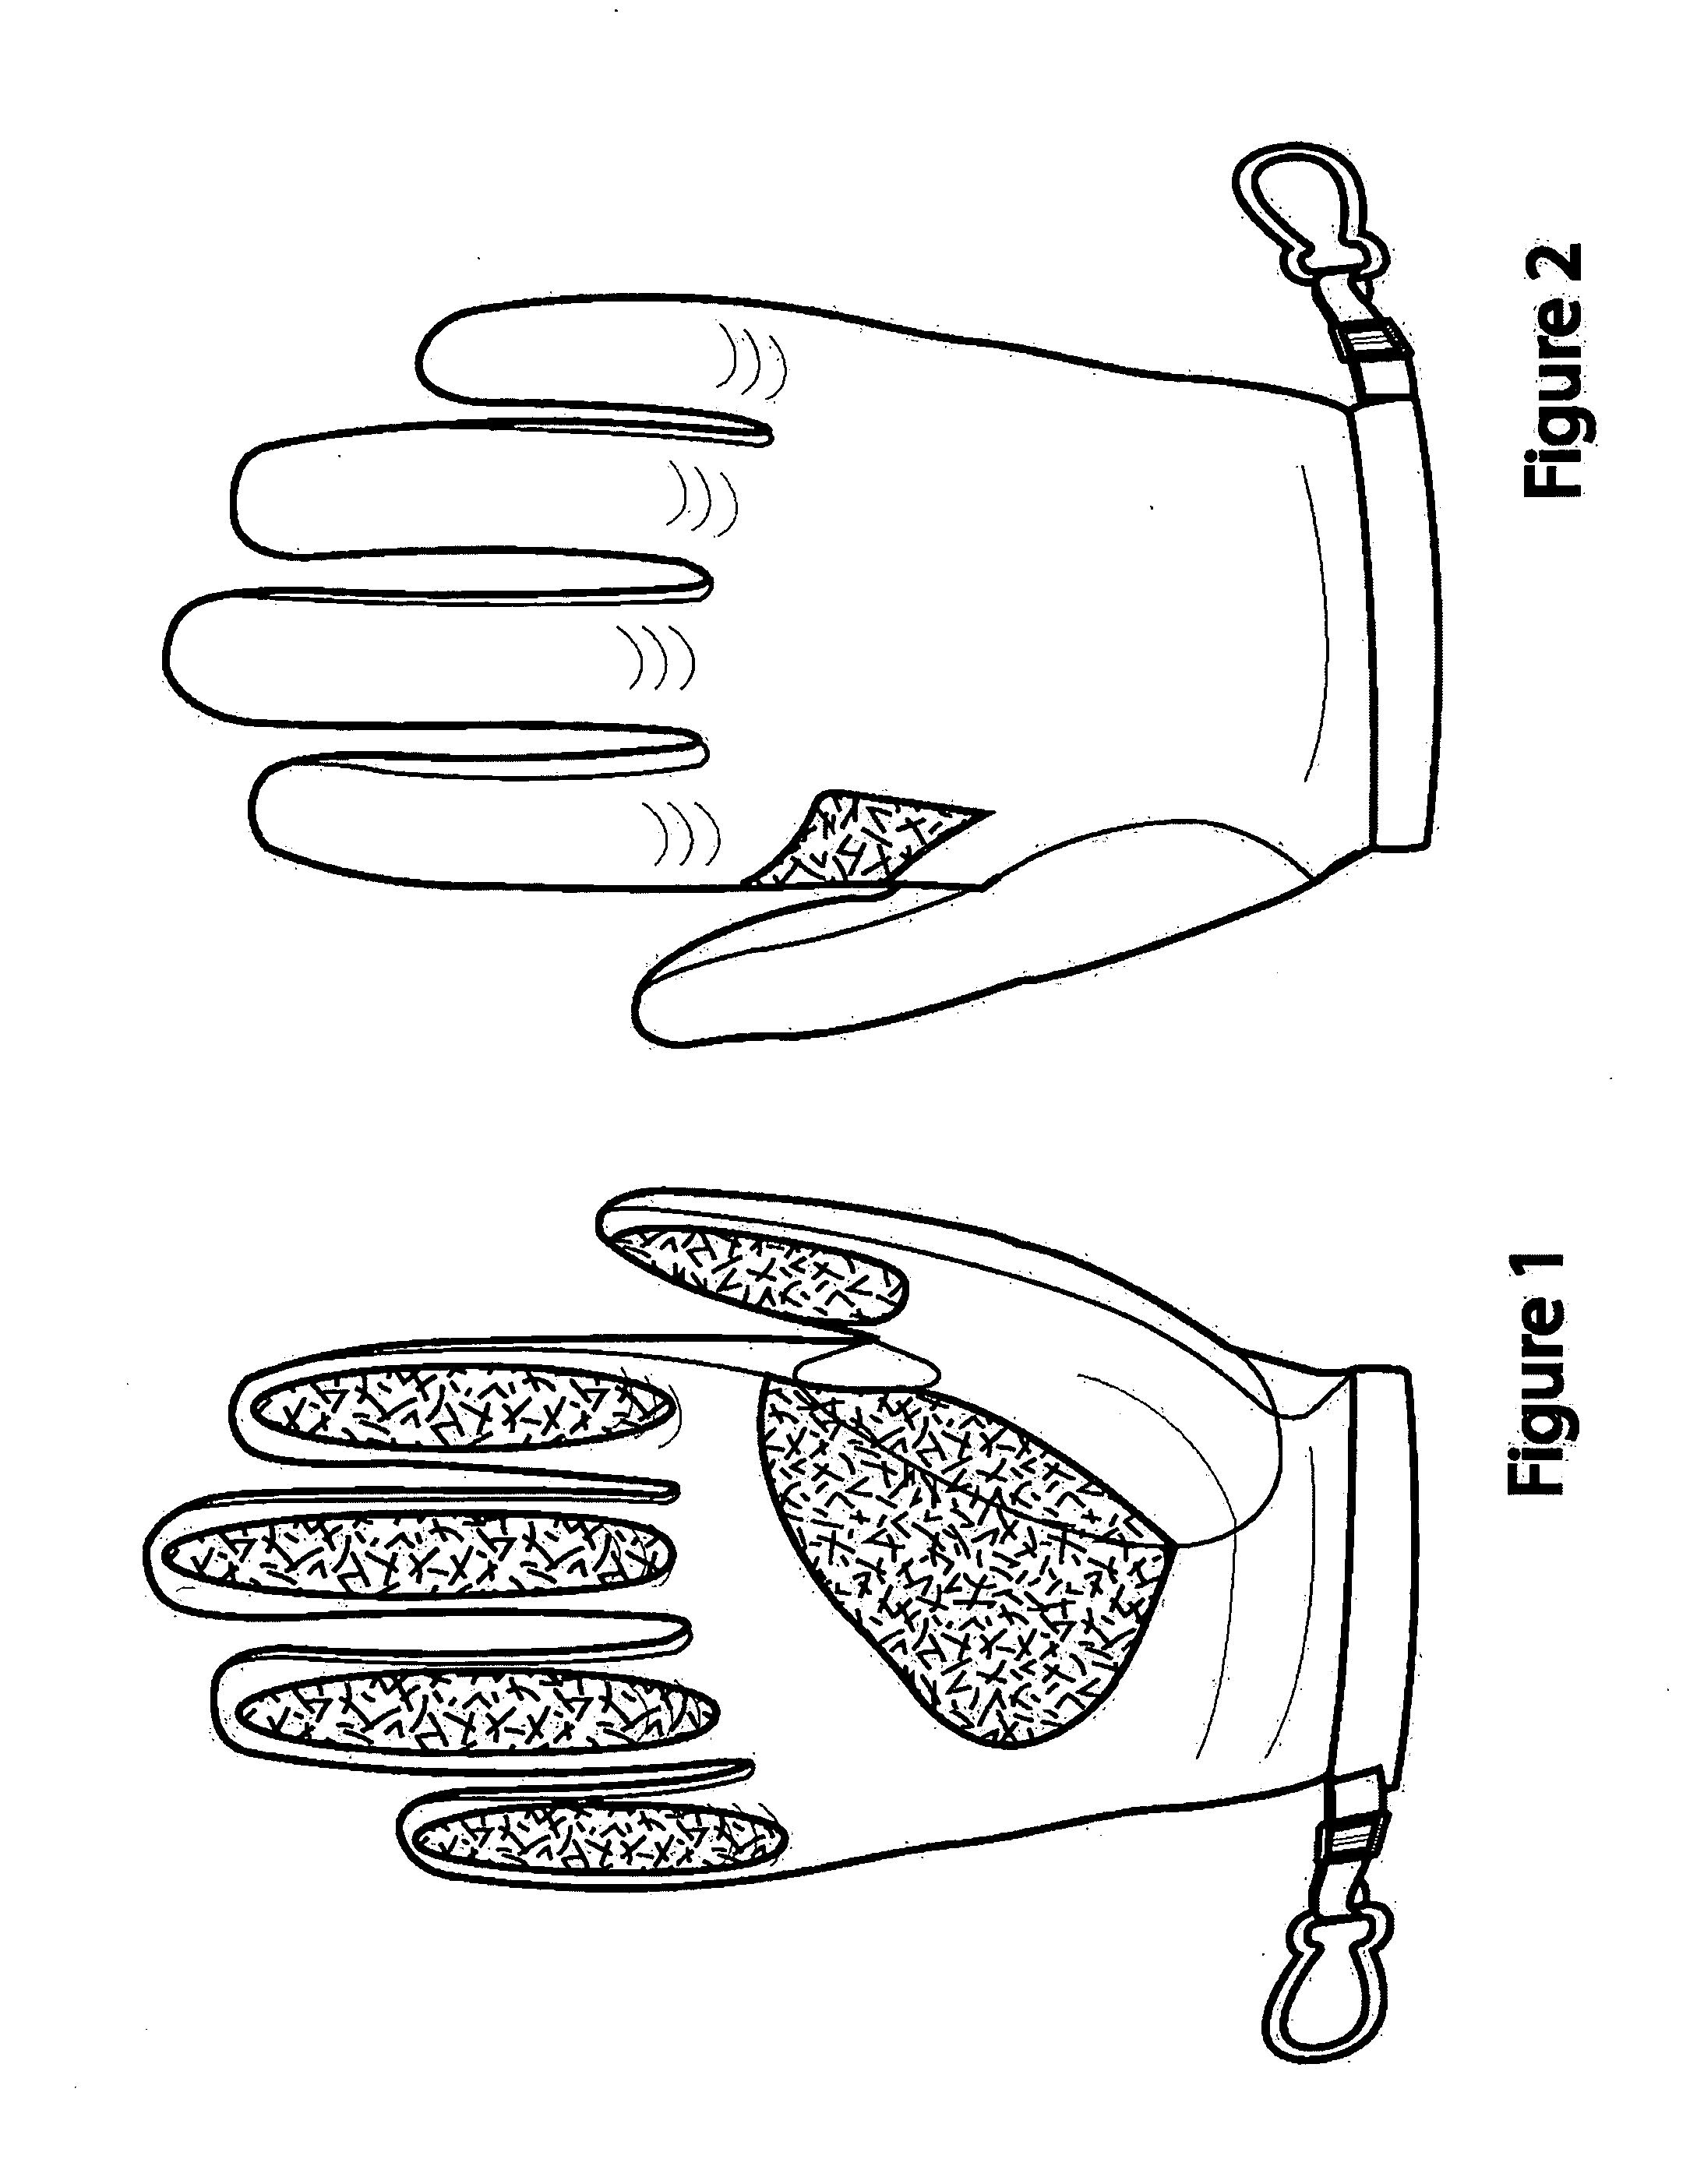 Heat protective glove